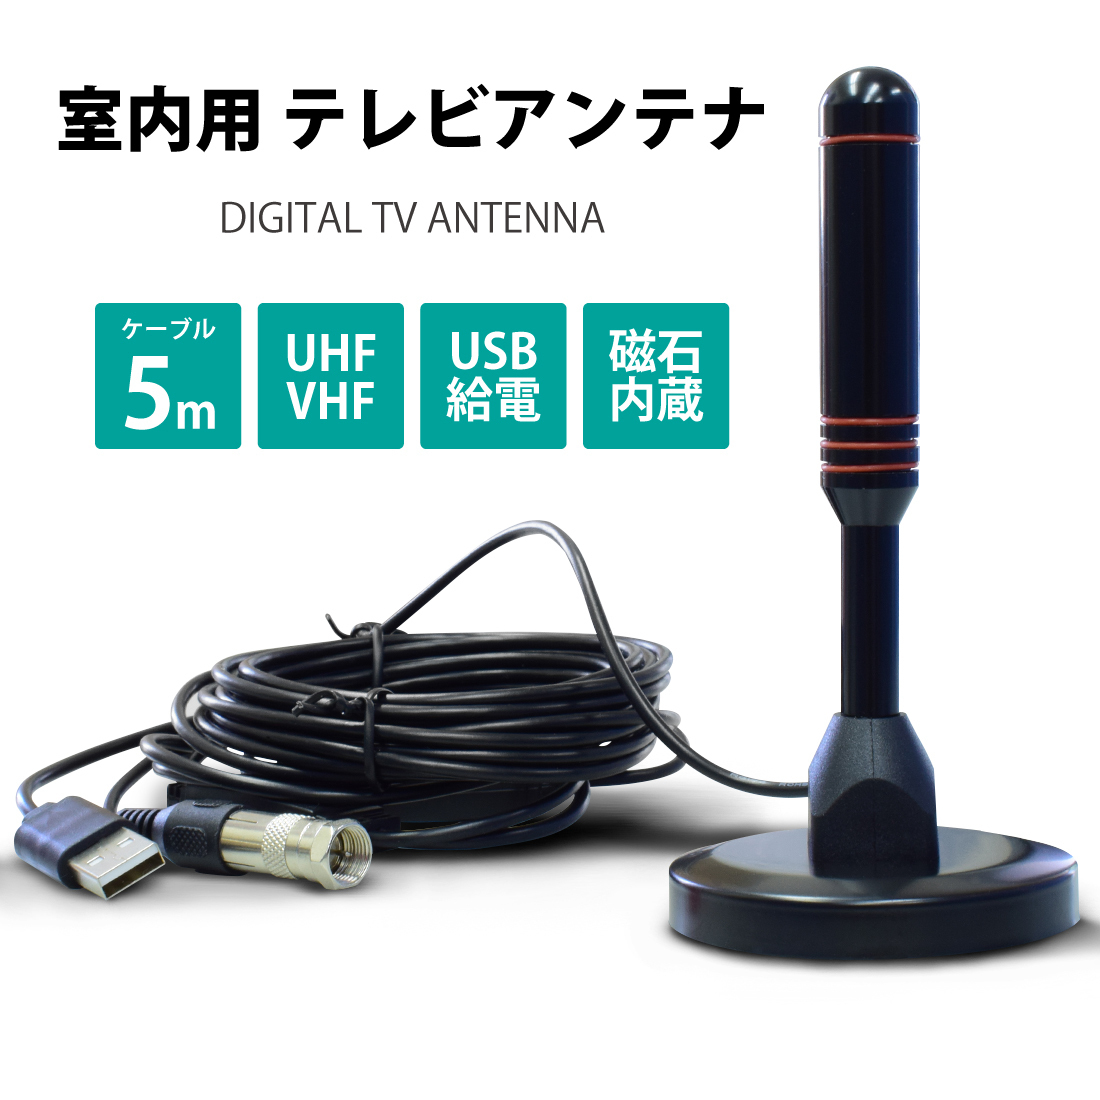 LDL1268# салон антенна телевизор антенна портативный 4K HD TV цифровой антенна бустер встроенный высокая эффективность прием 120KM прием область антенна cave 